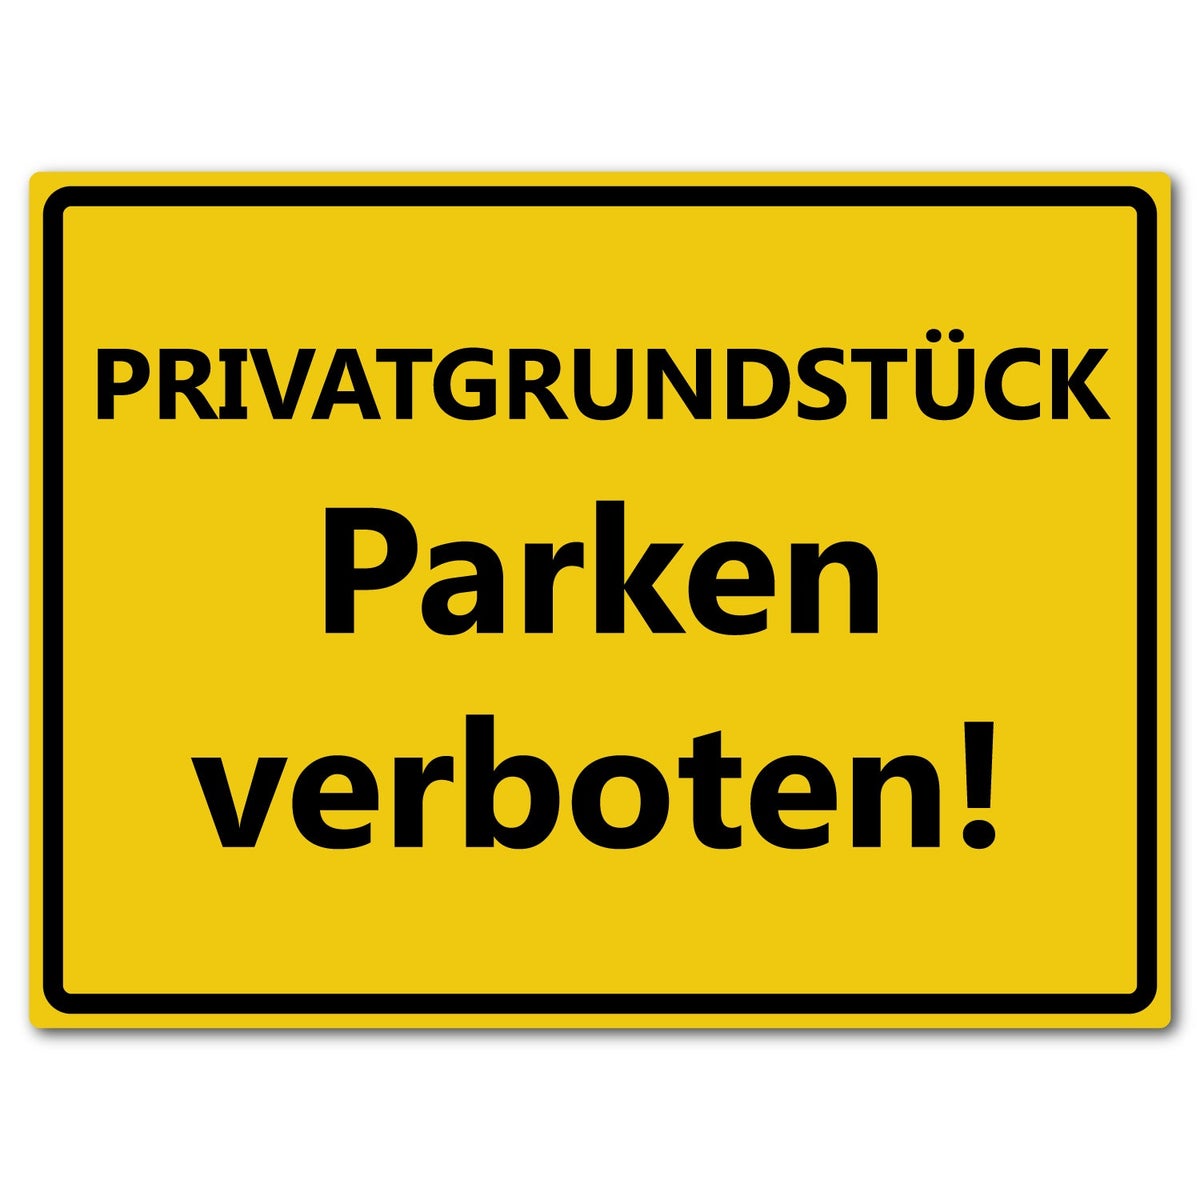 Privatgrundstück Parken verboten - reflektierendes Schild - gelb - ALU DIBOND / XXL (60 x 45 cm)